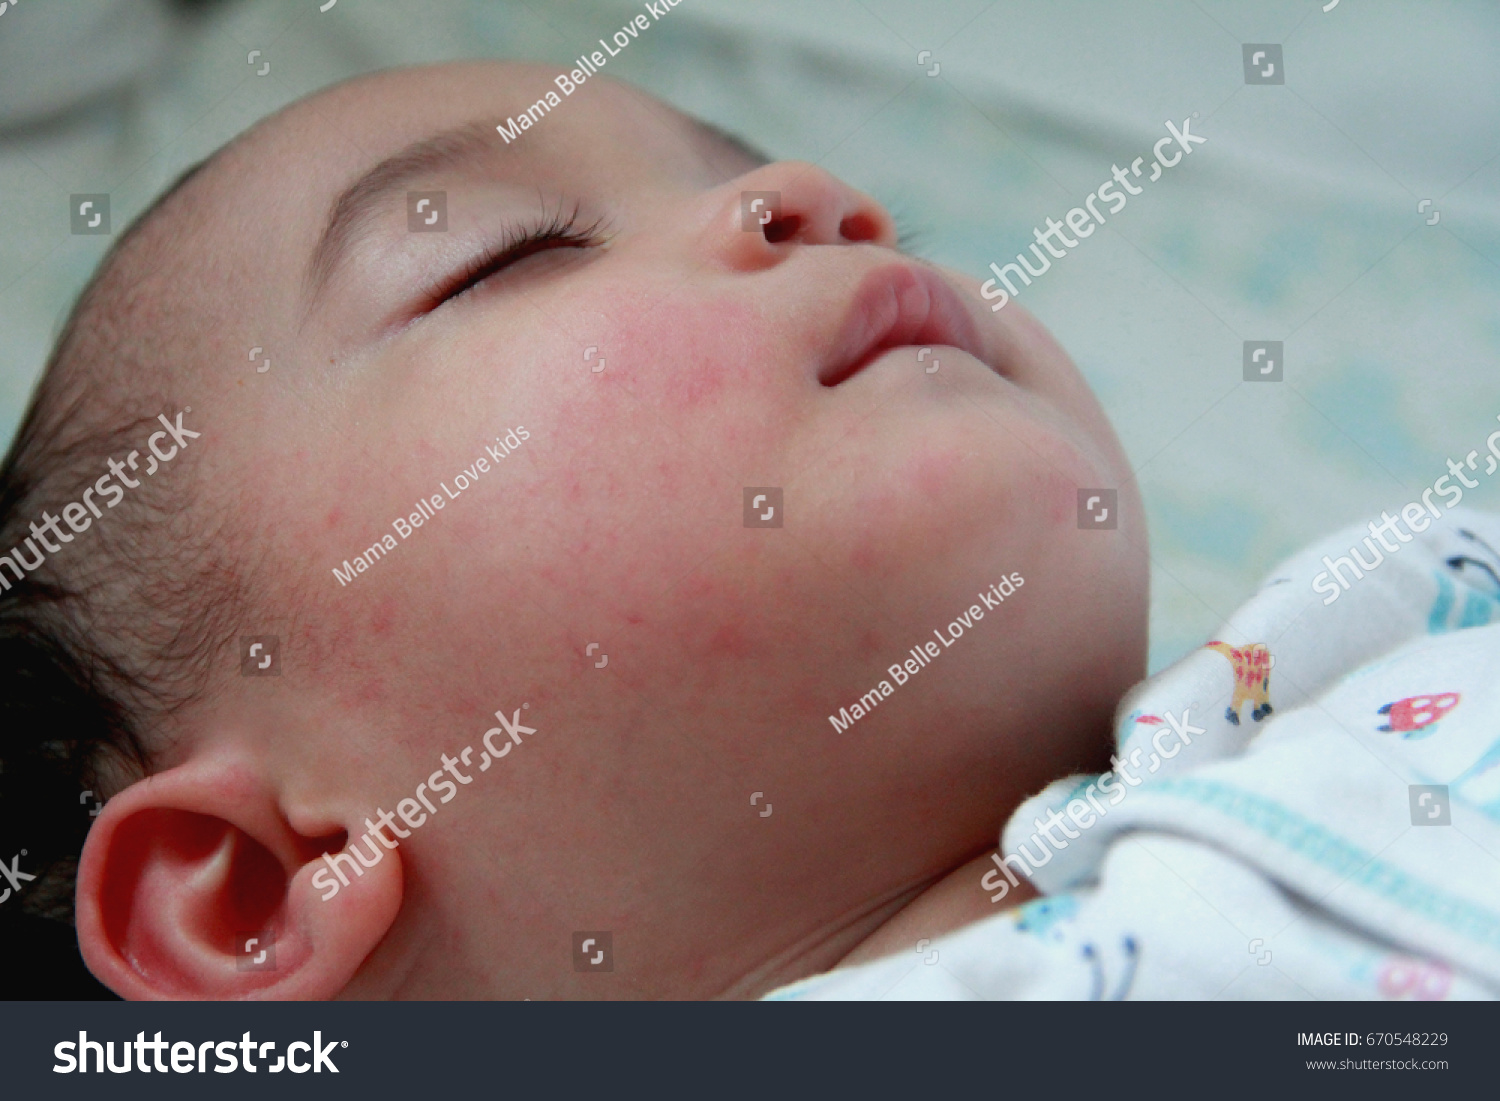 Baby Fever: Baby Fever Blister On Lip